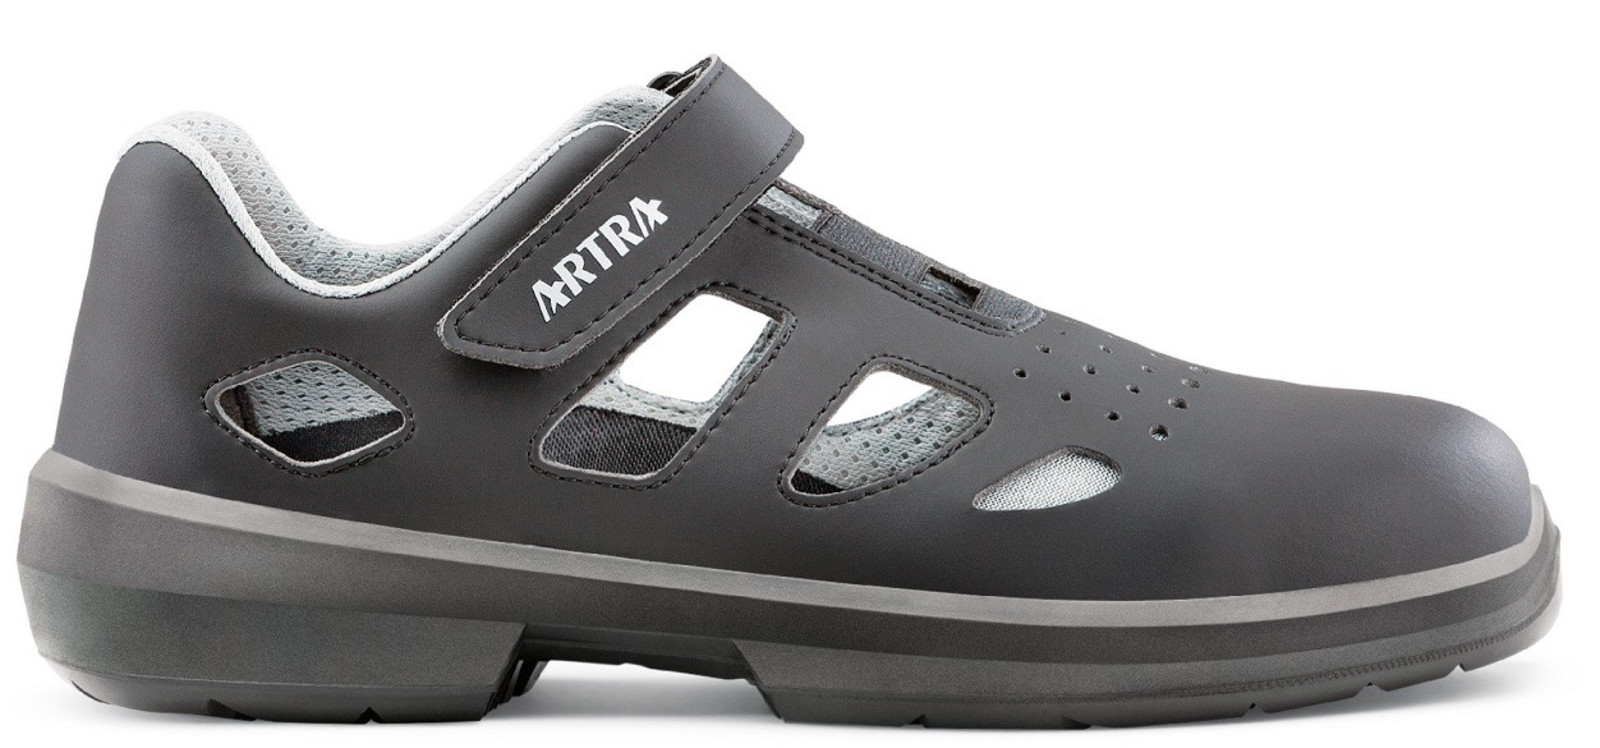 Bezpečnostné sandále Artra Ario 801 671460 S1P - veľkosť: 38, farba: čierna